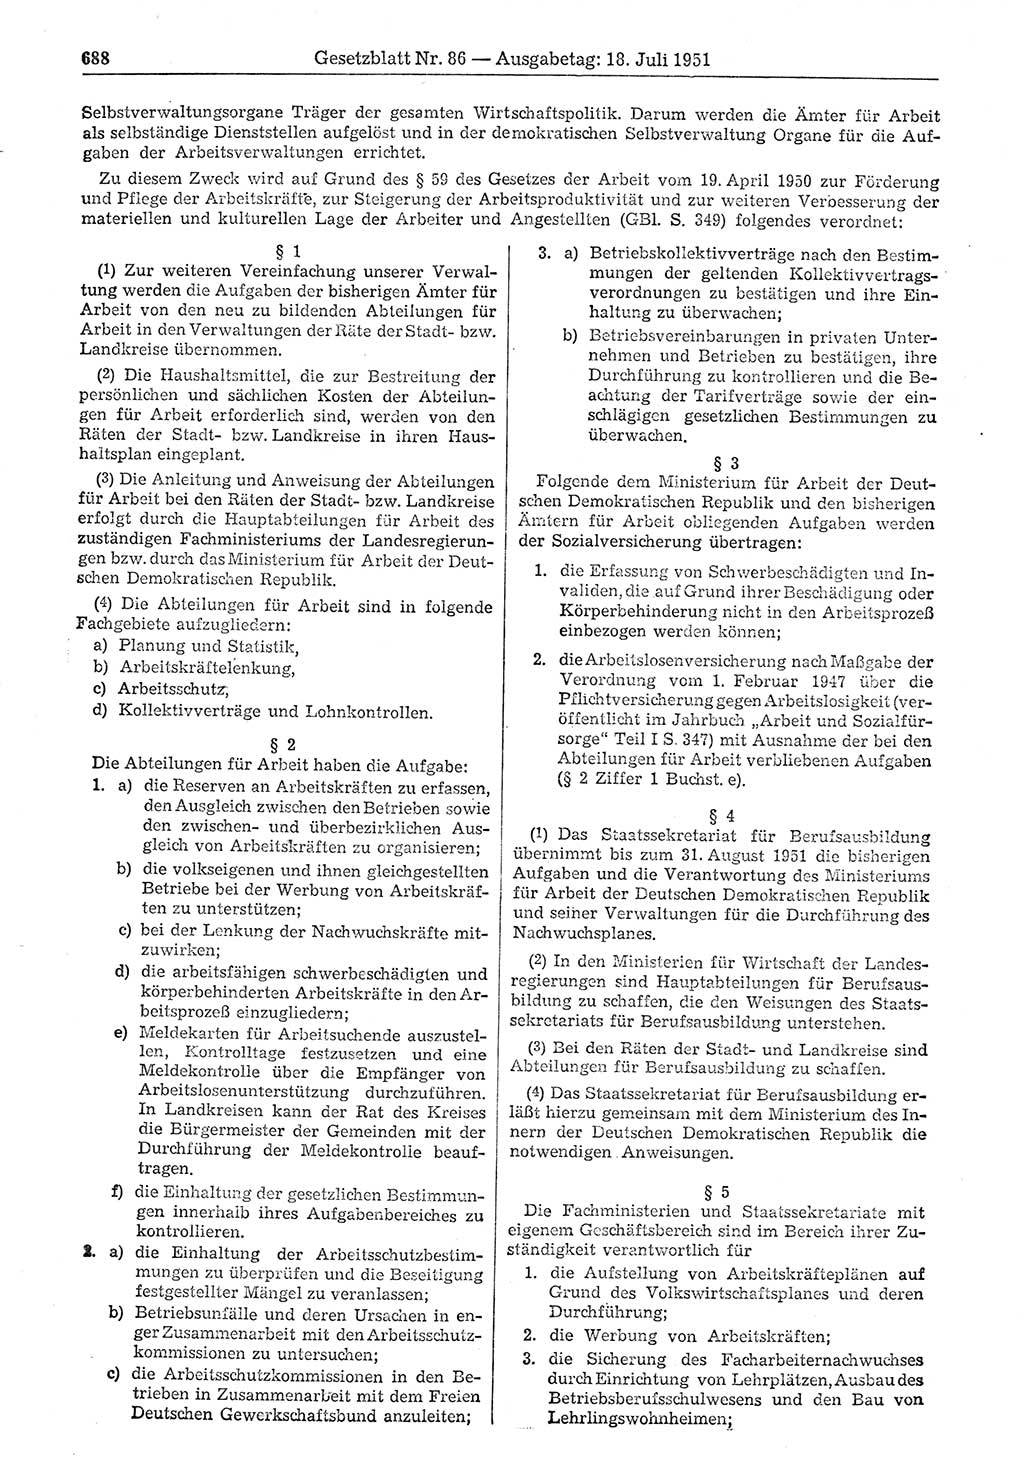 Gesetzblatt (GBl.) der Deutschen Demokratischen Republik (DDR) 1951, Seite 688 (GBl. DDR 1951, S. 688)